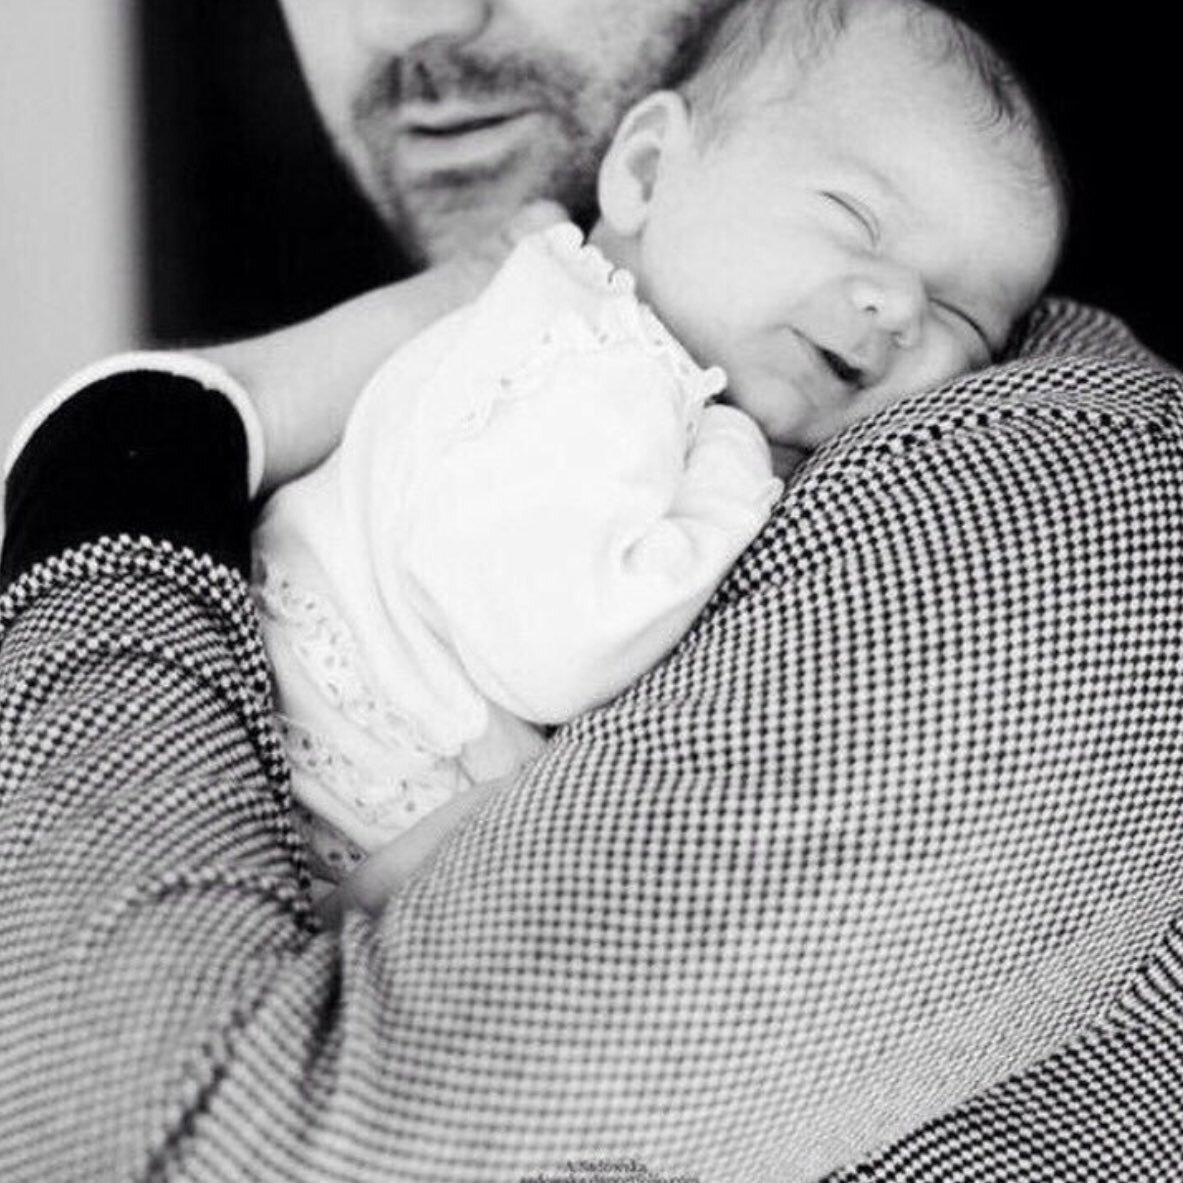 Бывший муж с ребенком на руках. Фотосессия младенцев. Папа с малышом на руках. Мужчина с ребенком. Мужчина с маленьким ребенком.